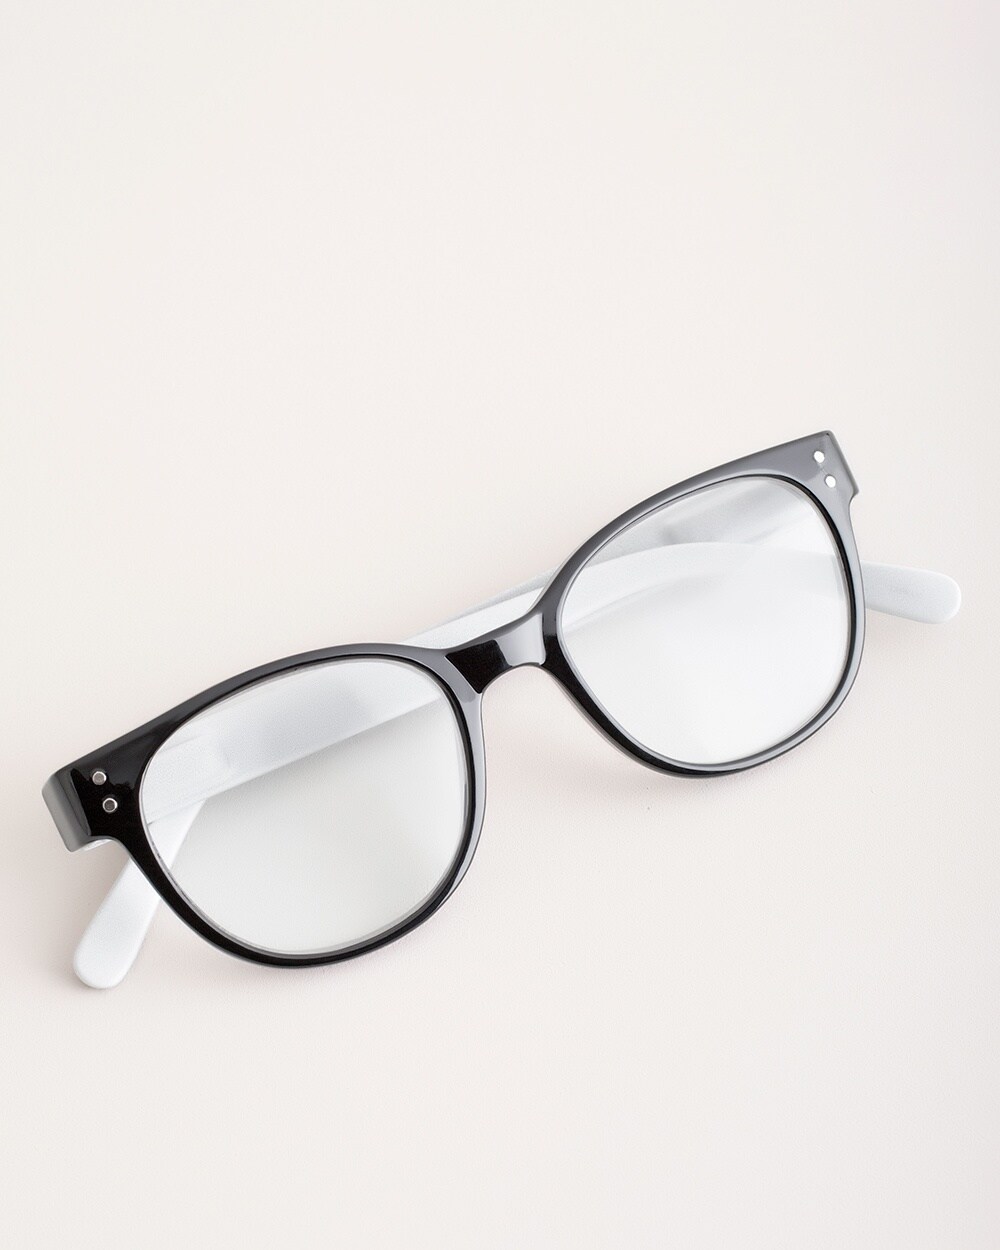 Black and White Reading Glasses